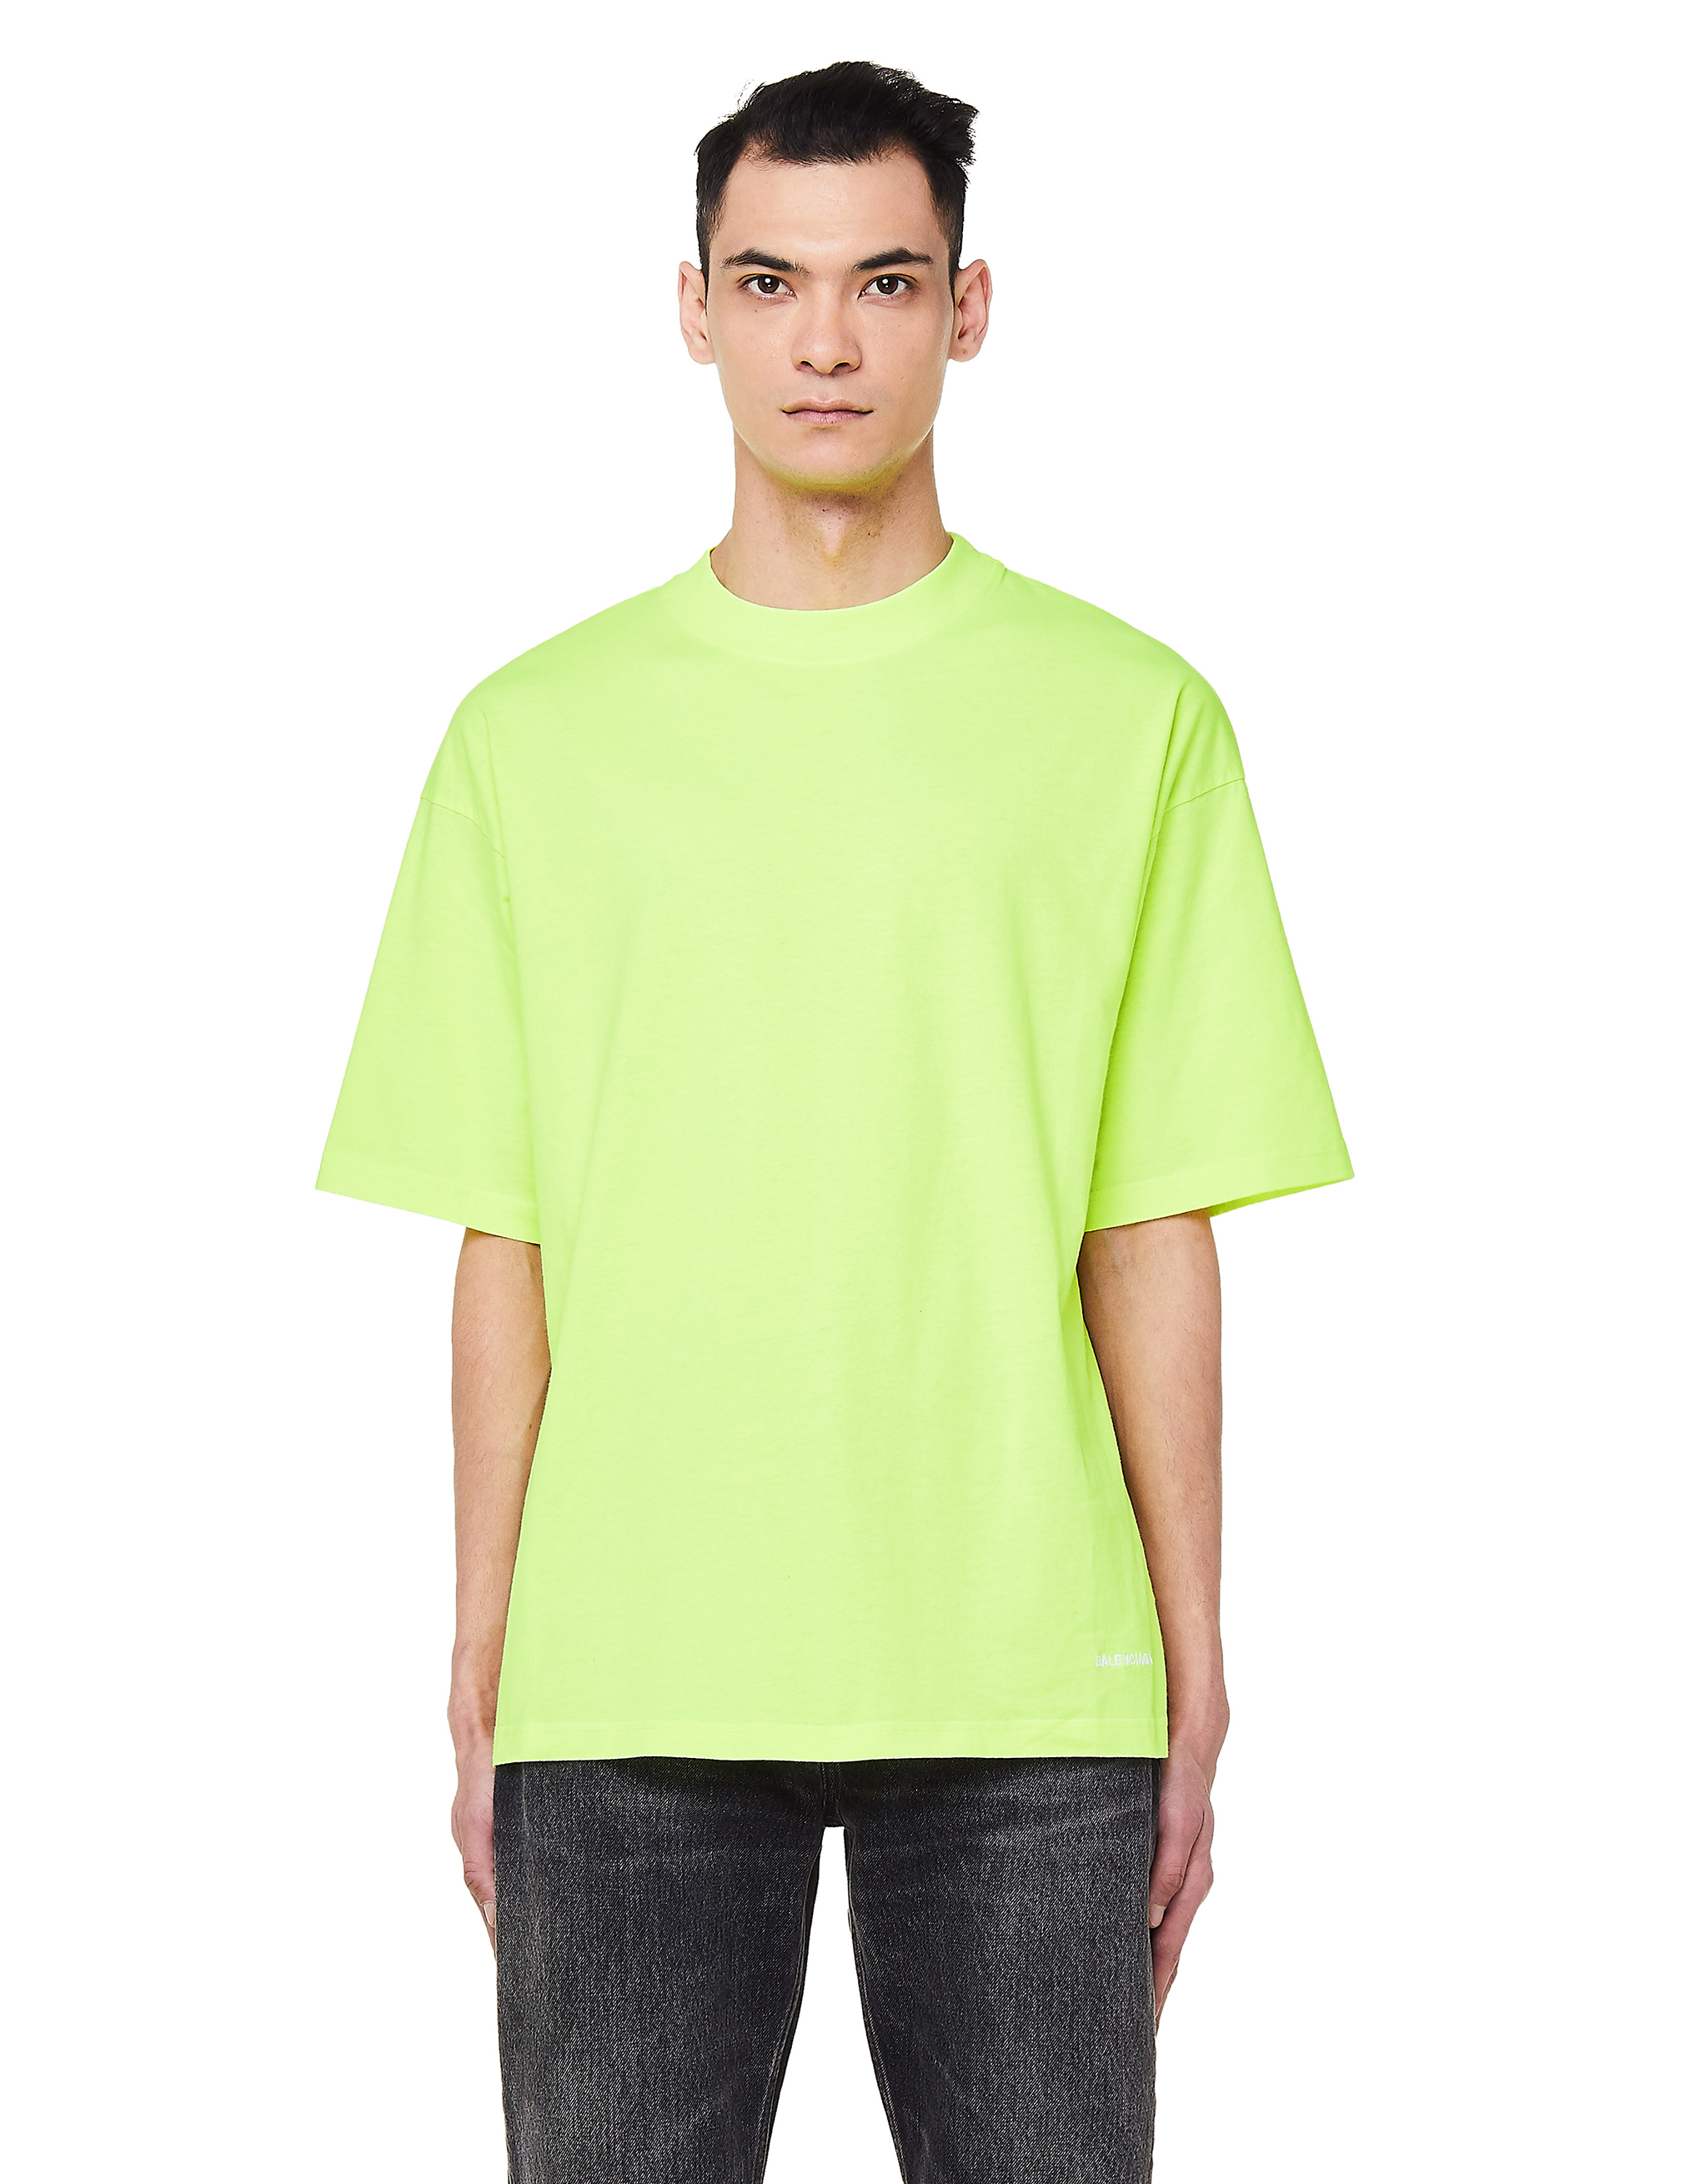 neon balenciaga shirt